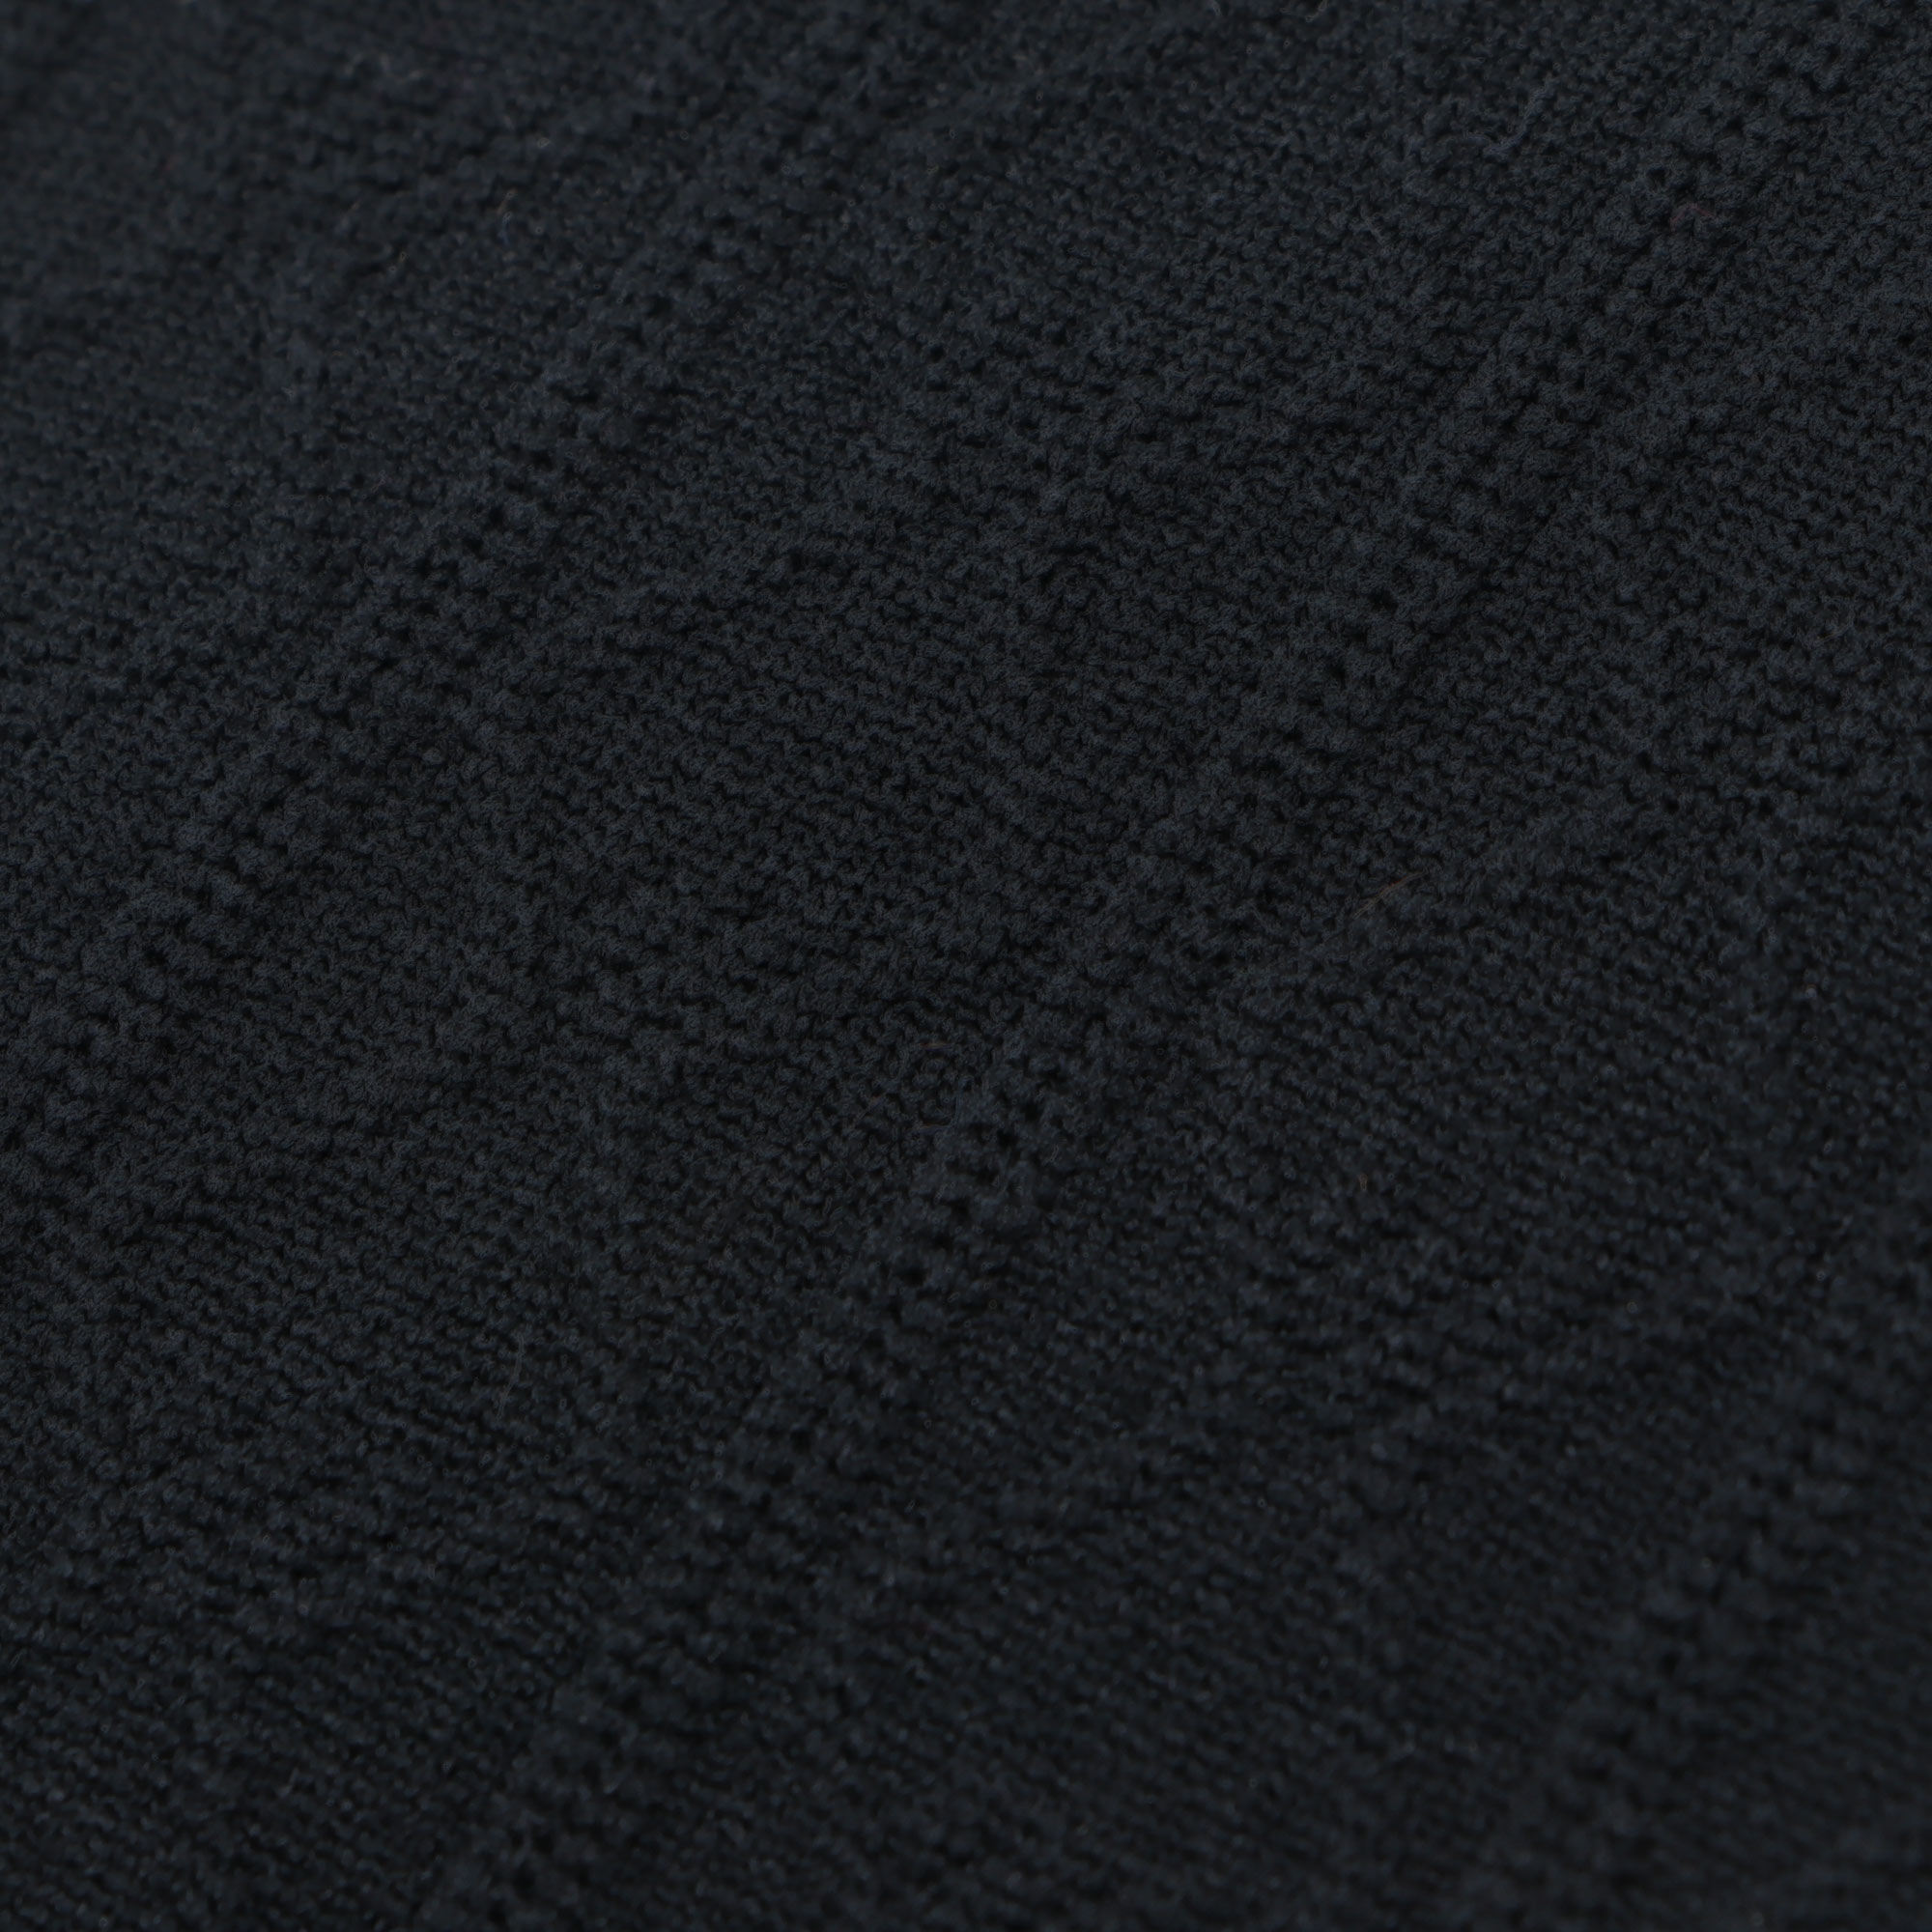 Термолеггинсы женские Oemen KZ001 черные M, цвет черный, размер M - фото 2